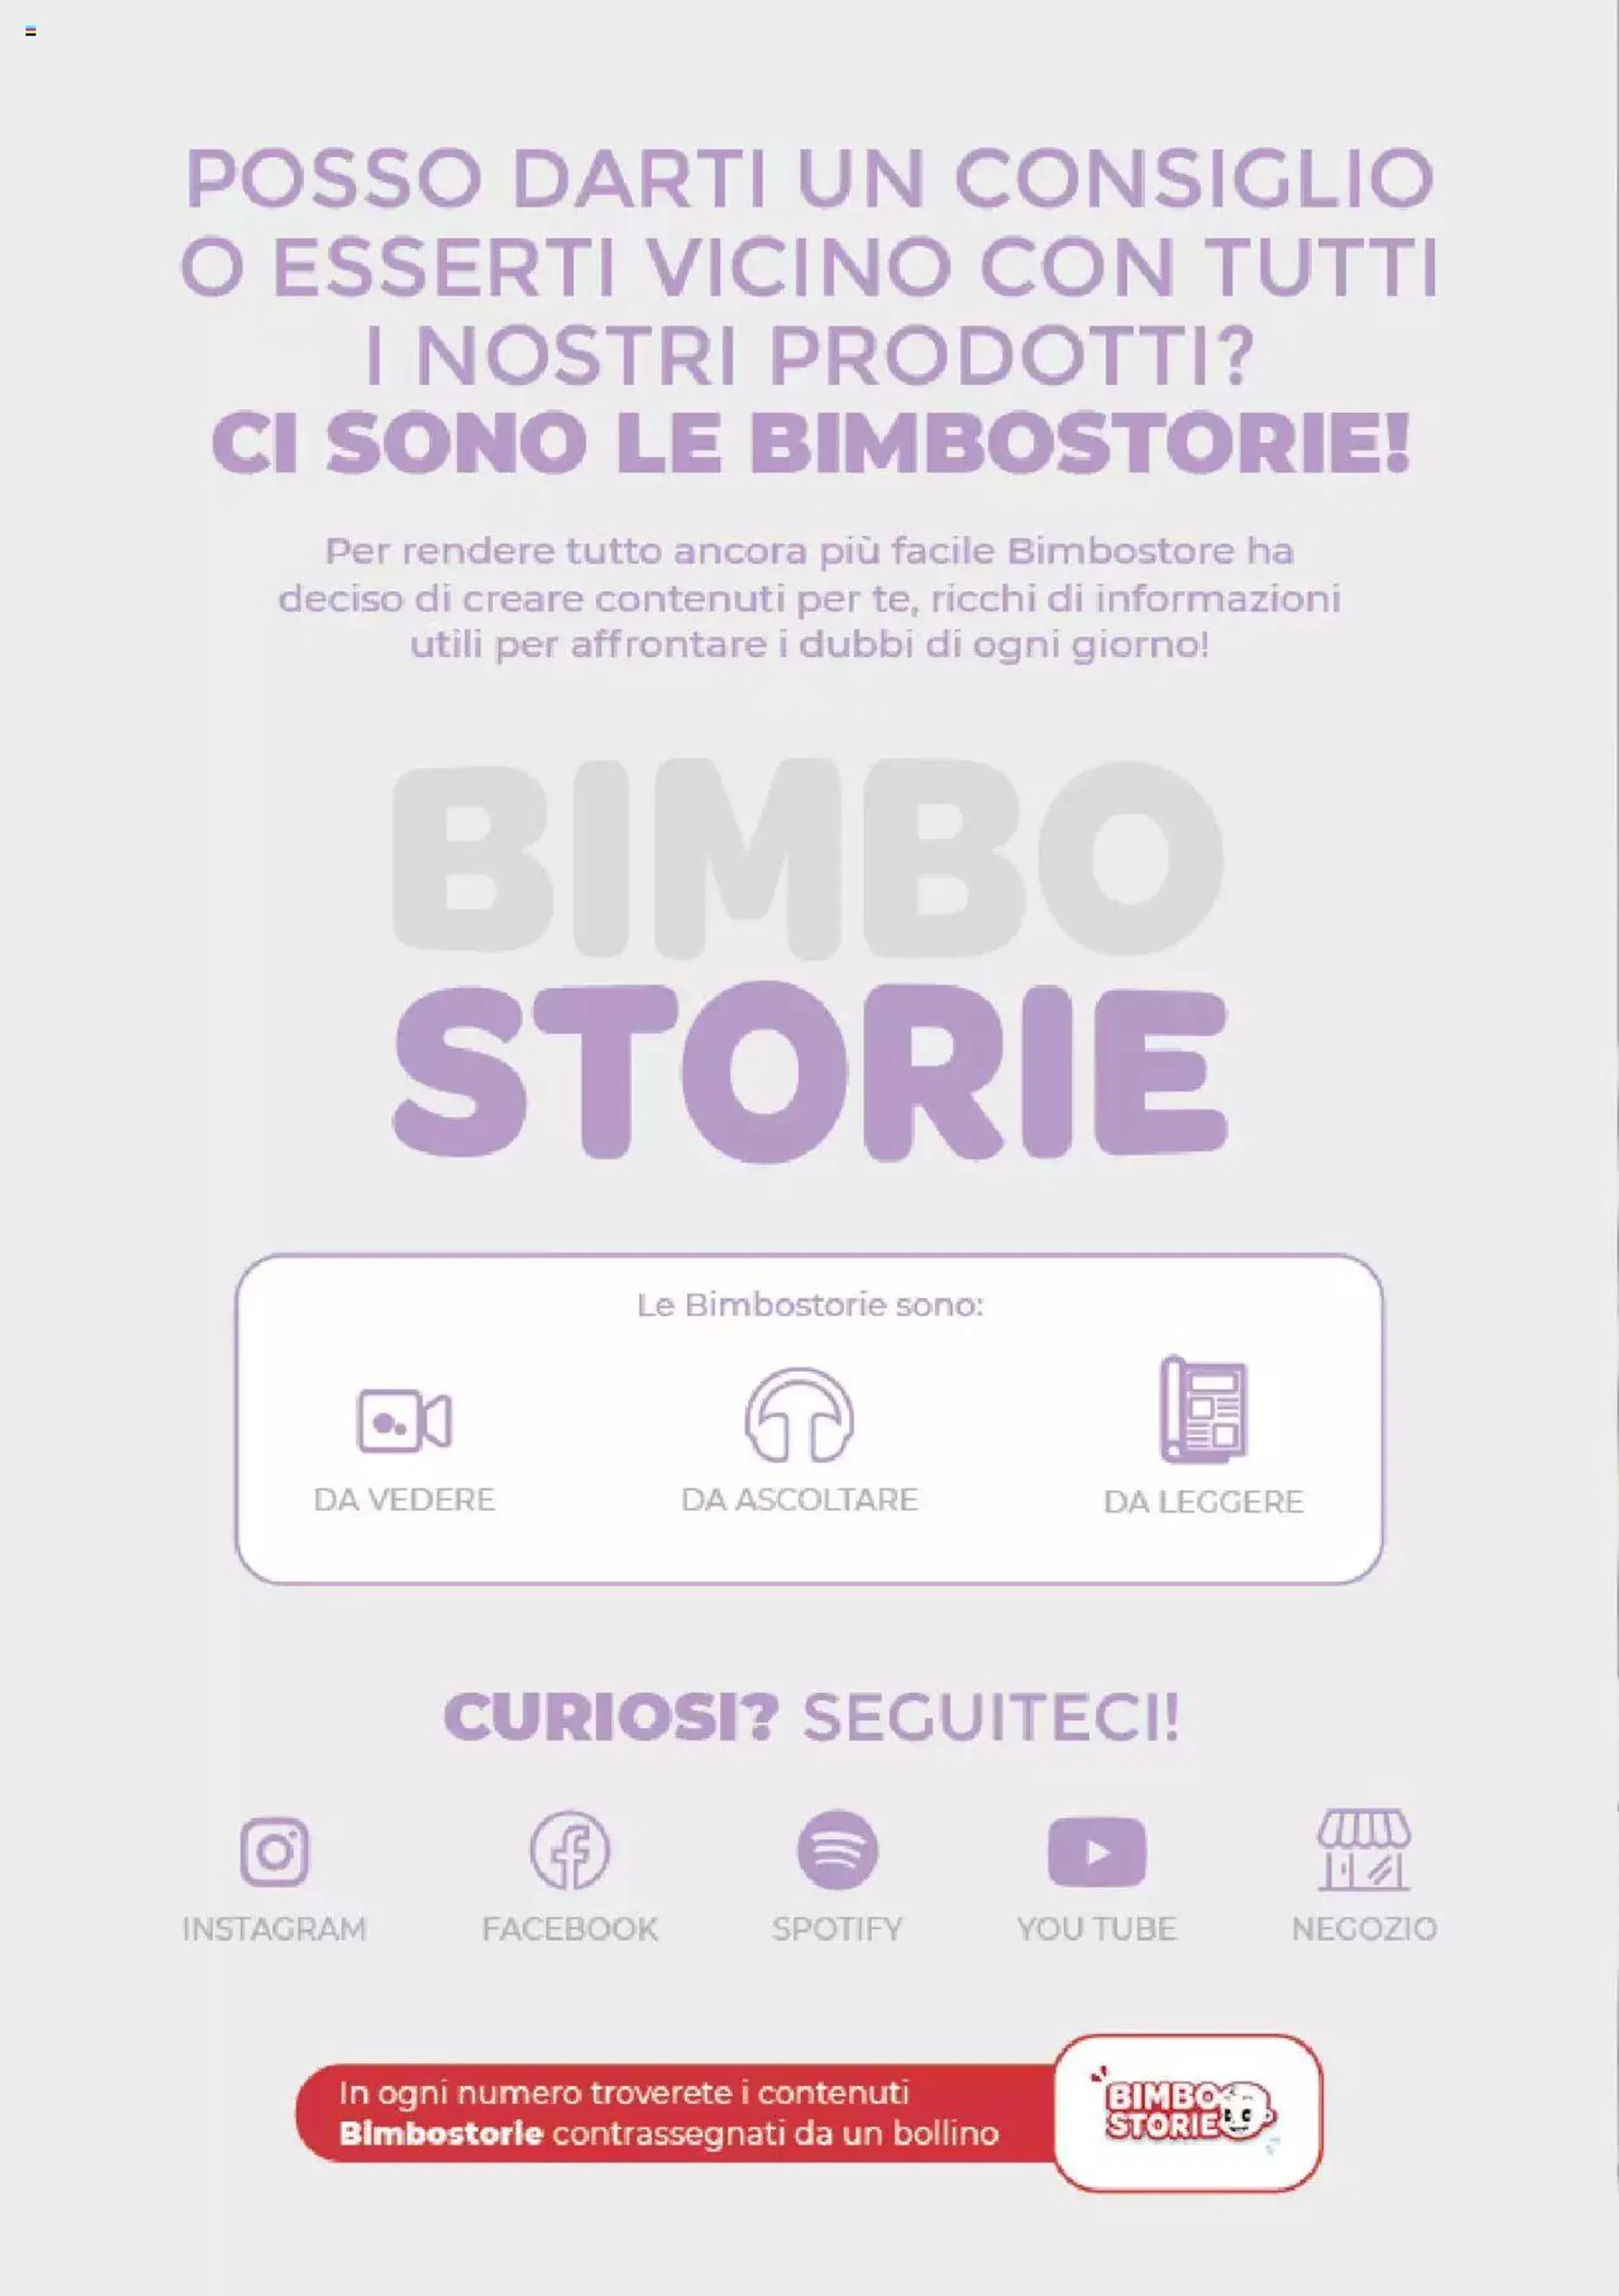 Bimbo store - Catalogo Bimbostorie da 1 giugno a 31 dicembre di 2022 - Pagina del volantino 4